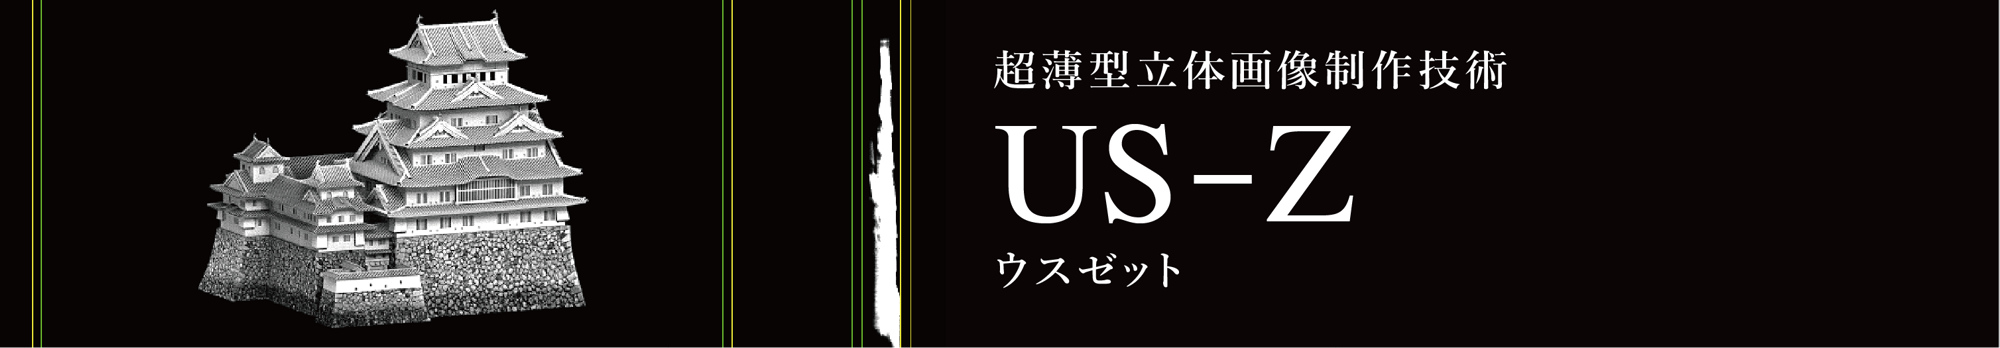 US-Z(ウスゼット)